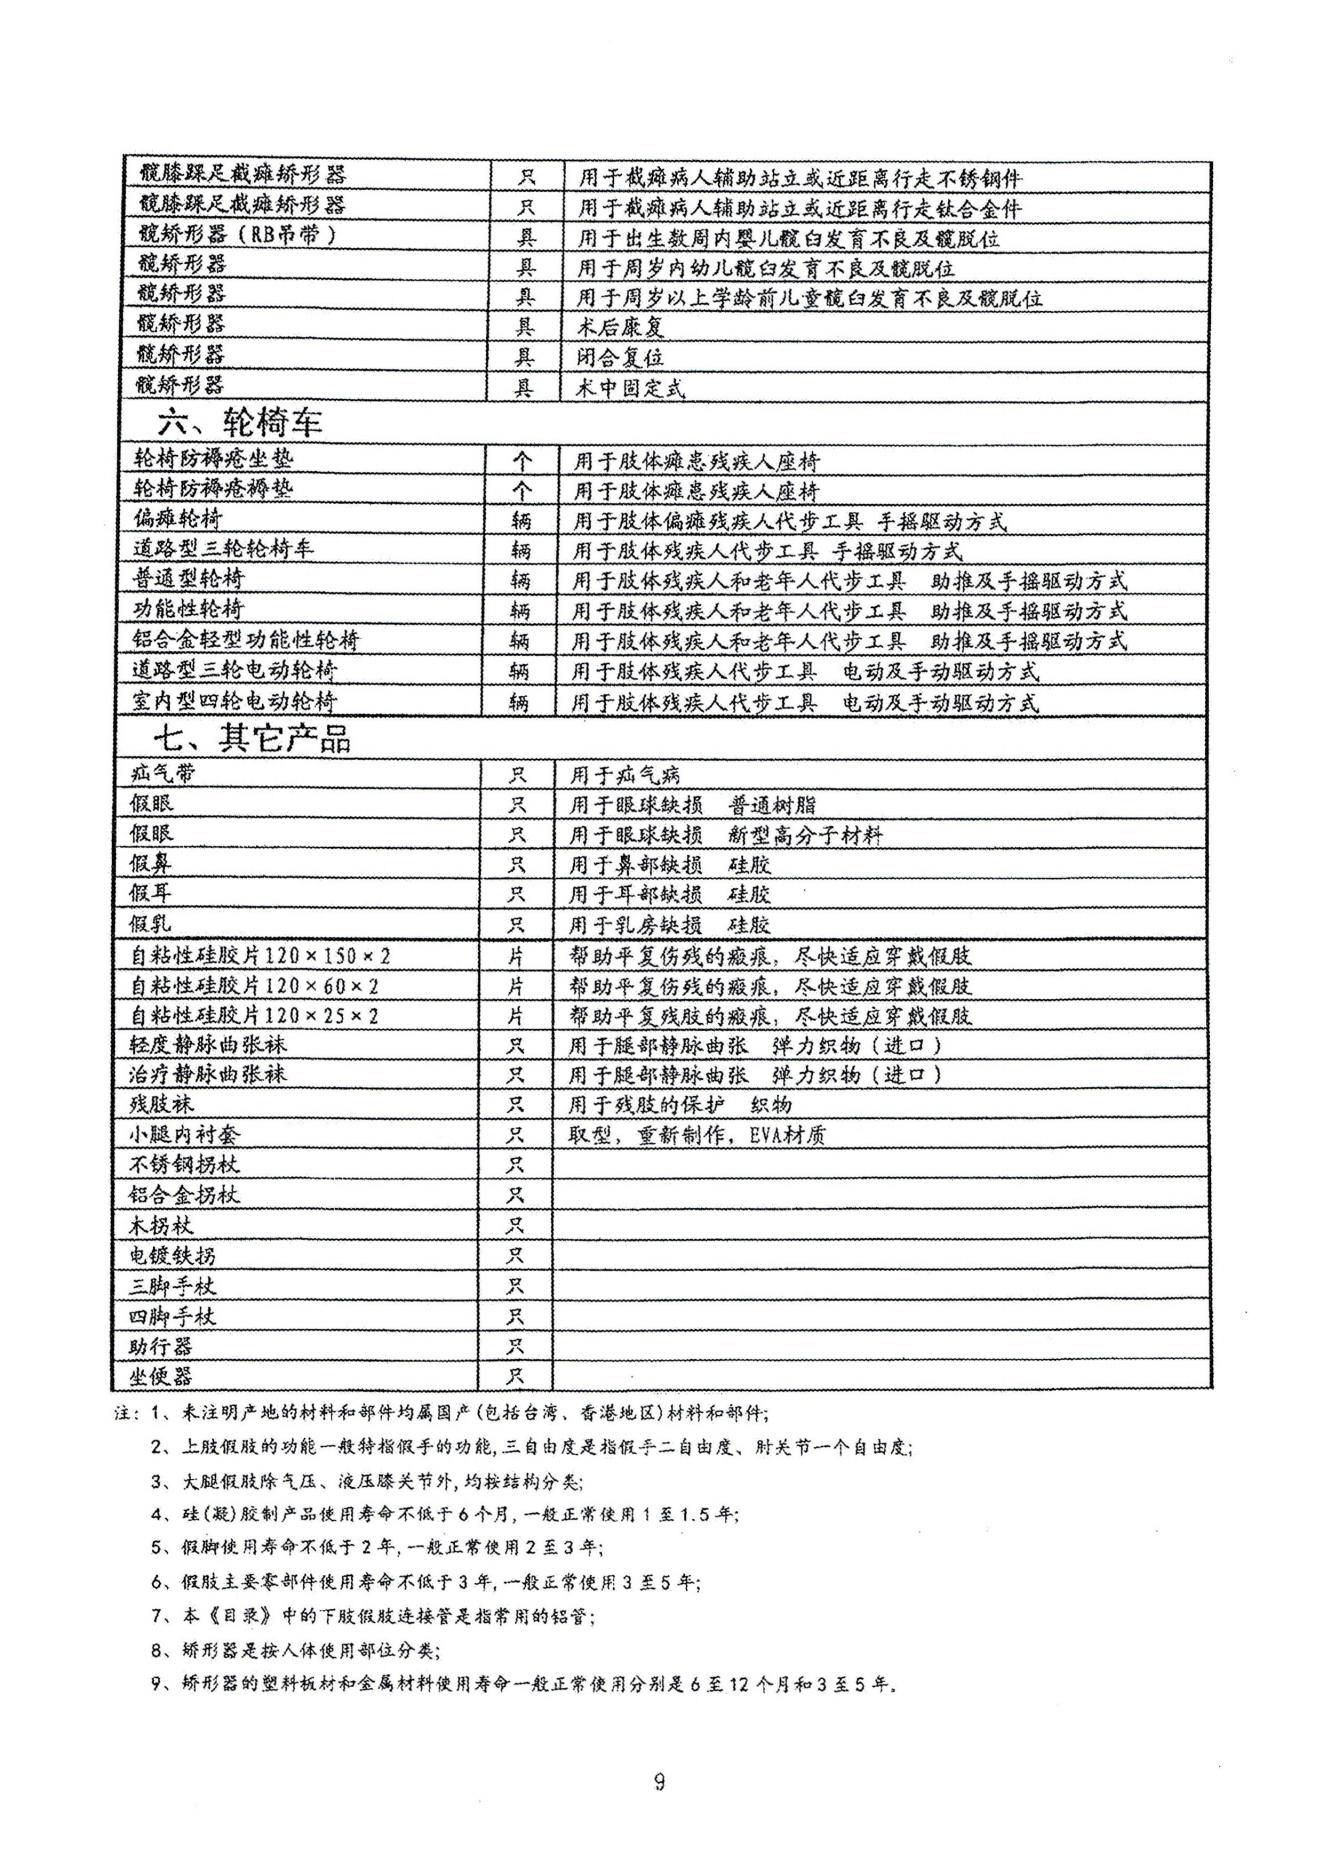 中国伤残人员专门用品目录_08.jpg